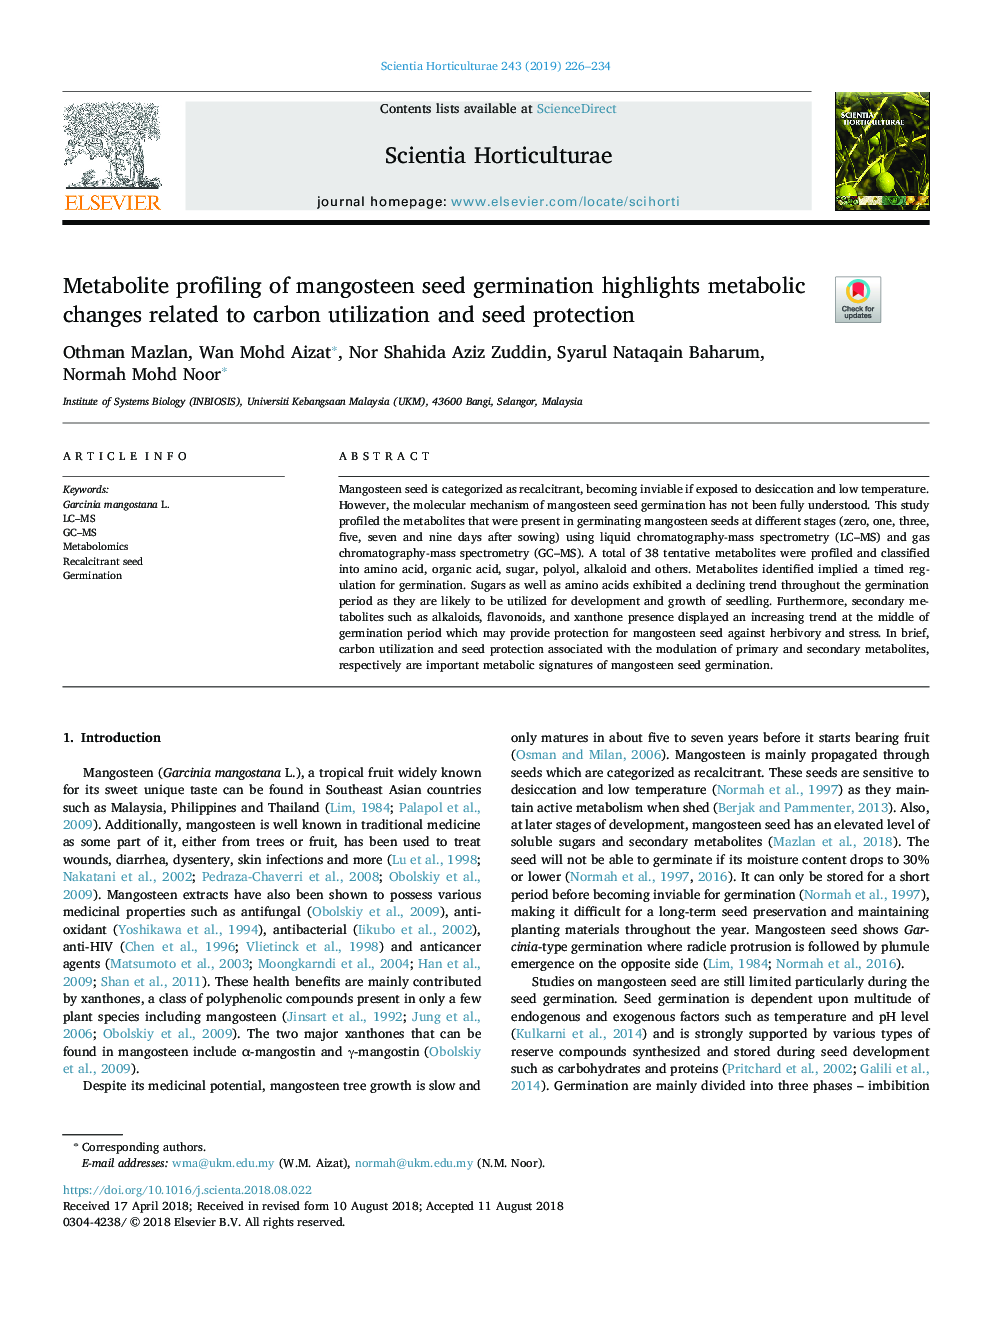 پروفیل متابولیت جوانهزنی بذر مانگوستین، تغییرات متابولیک مربوط به استفاده از کربن و حفاظت از بذر را نشان می دهد